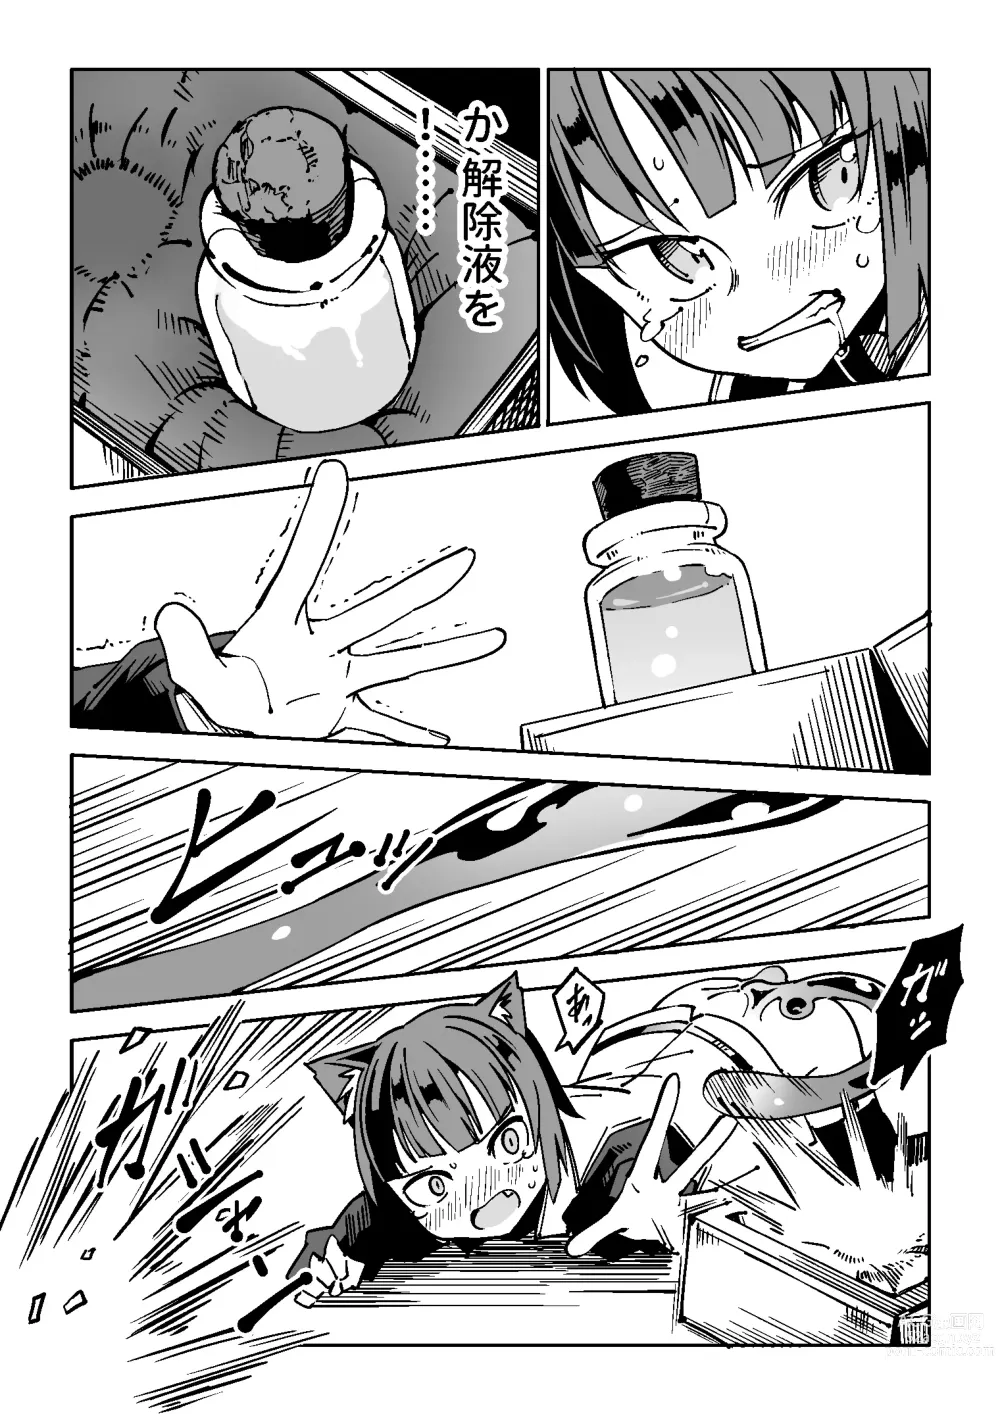 Page 13 of doujinshi NOID Episode:Julius